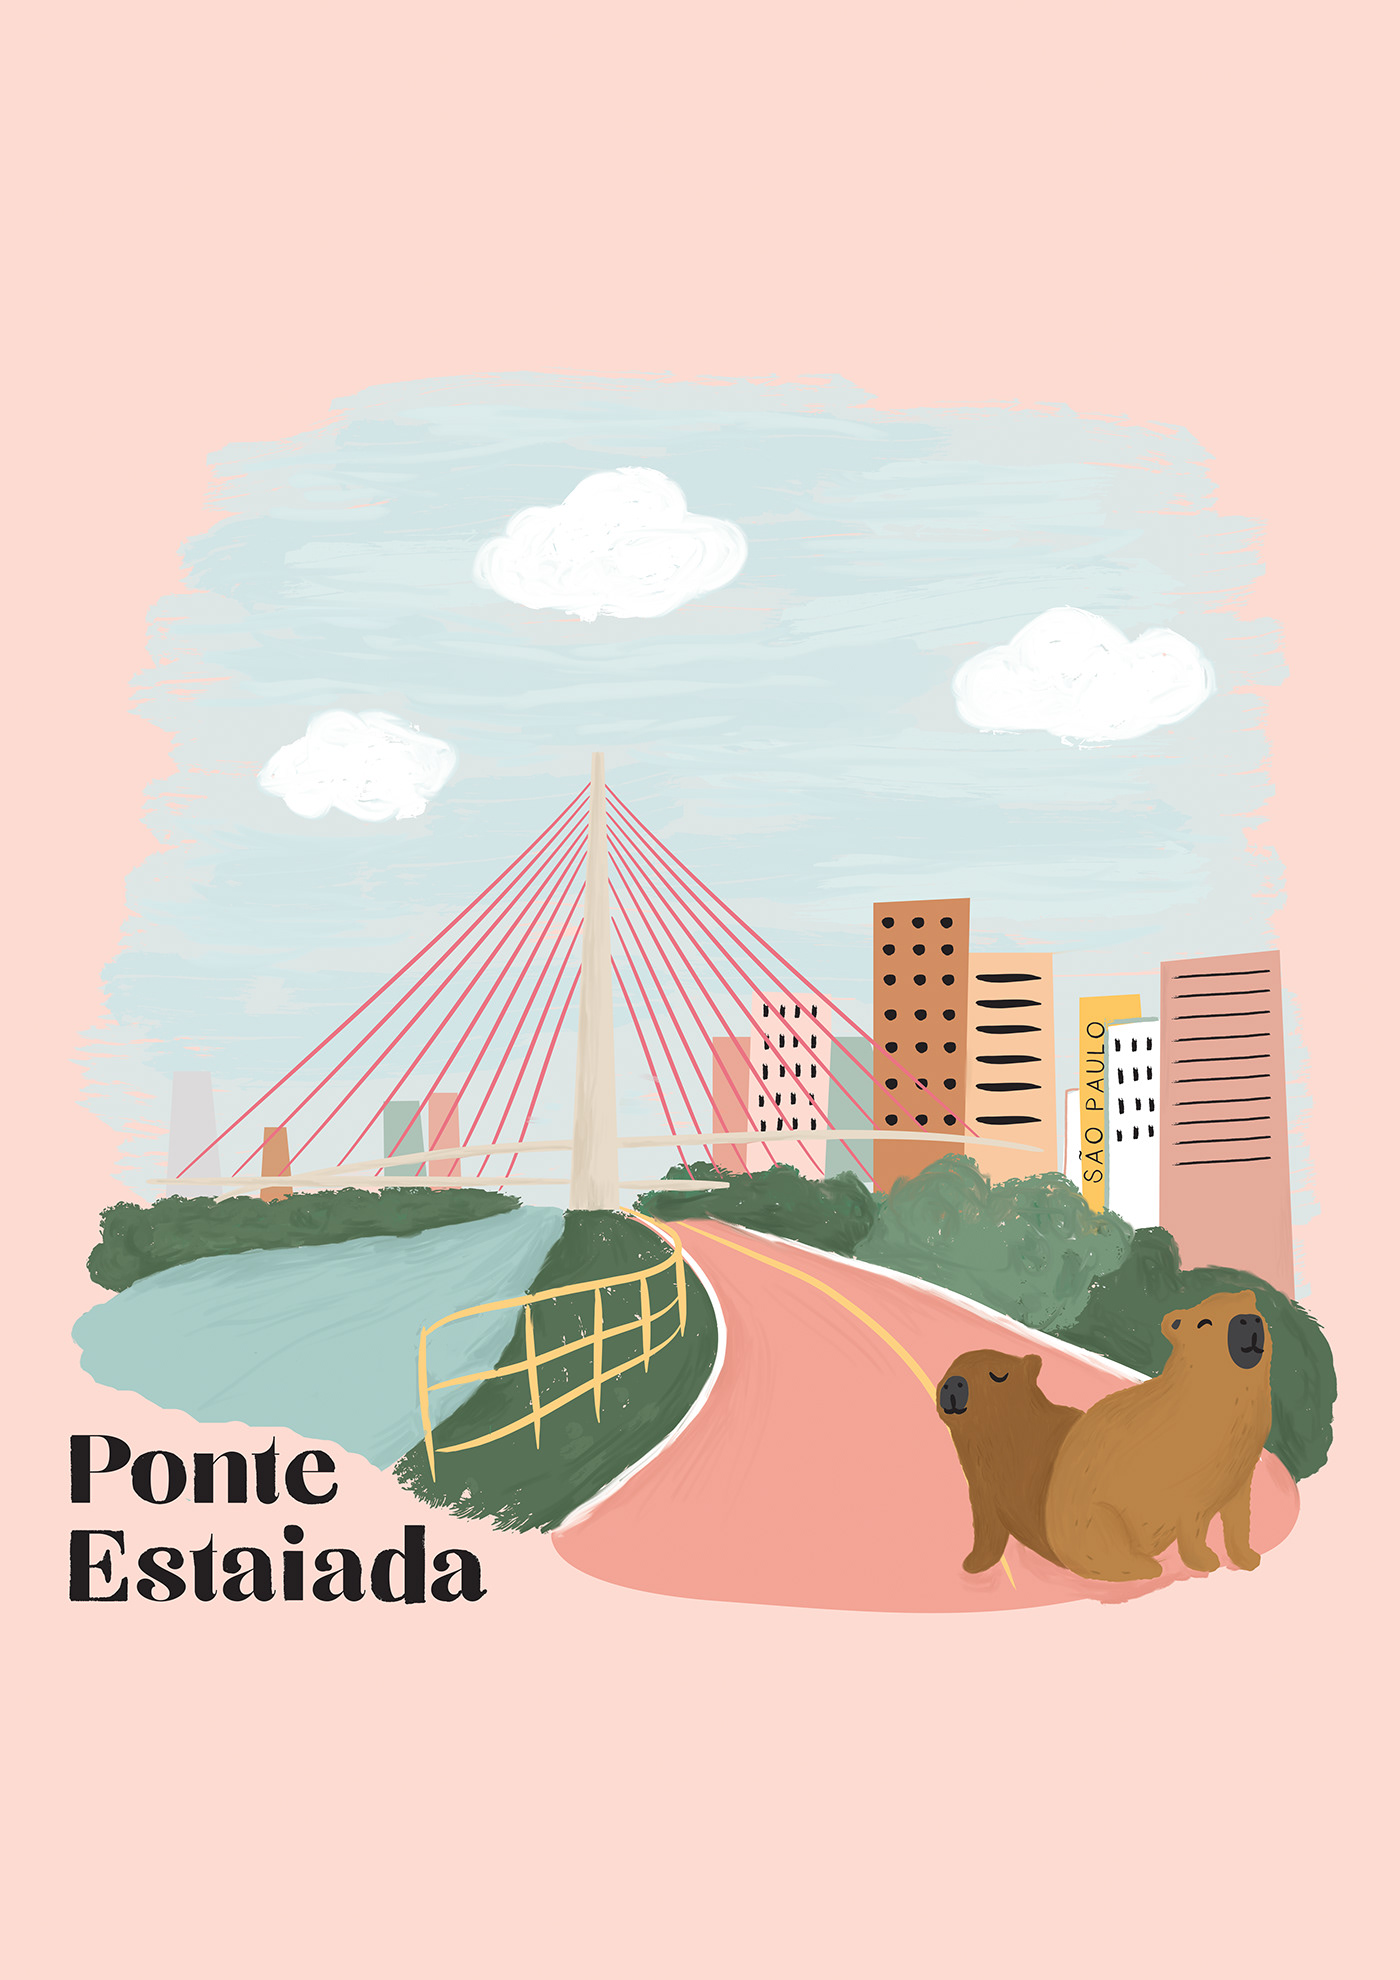 cidades brasileiras ilustração Digital pelourinho são paulo Farol da Barra Brasil cidades ilustração de cidades Curitiba copacabana